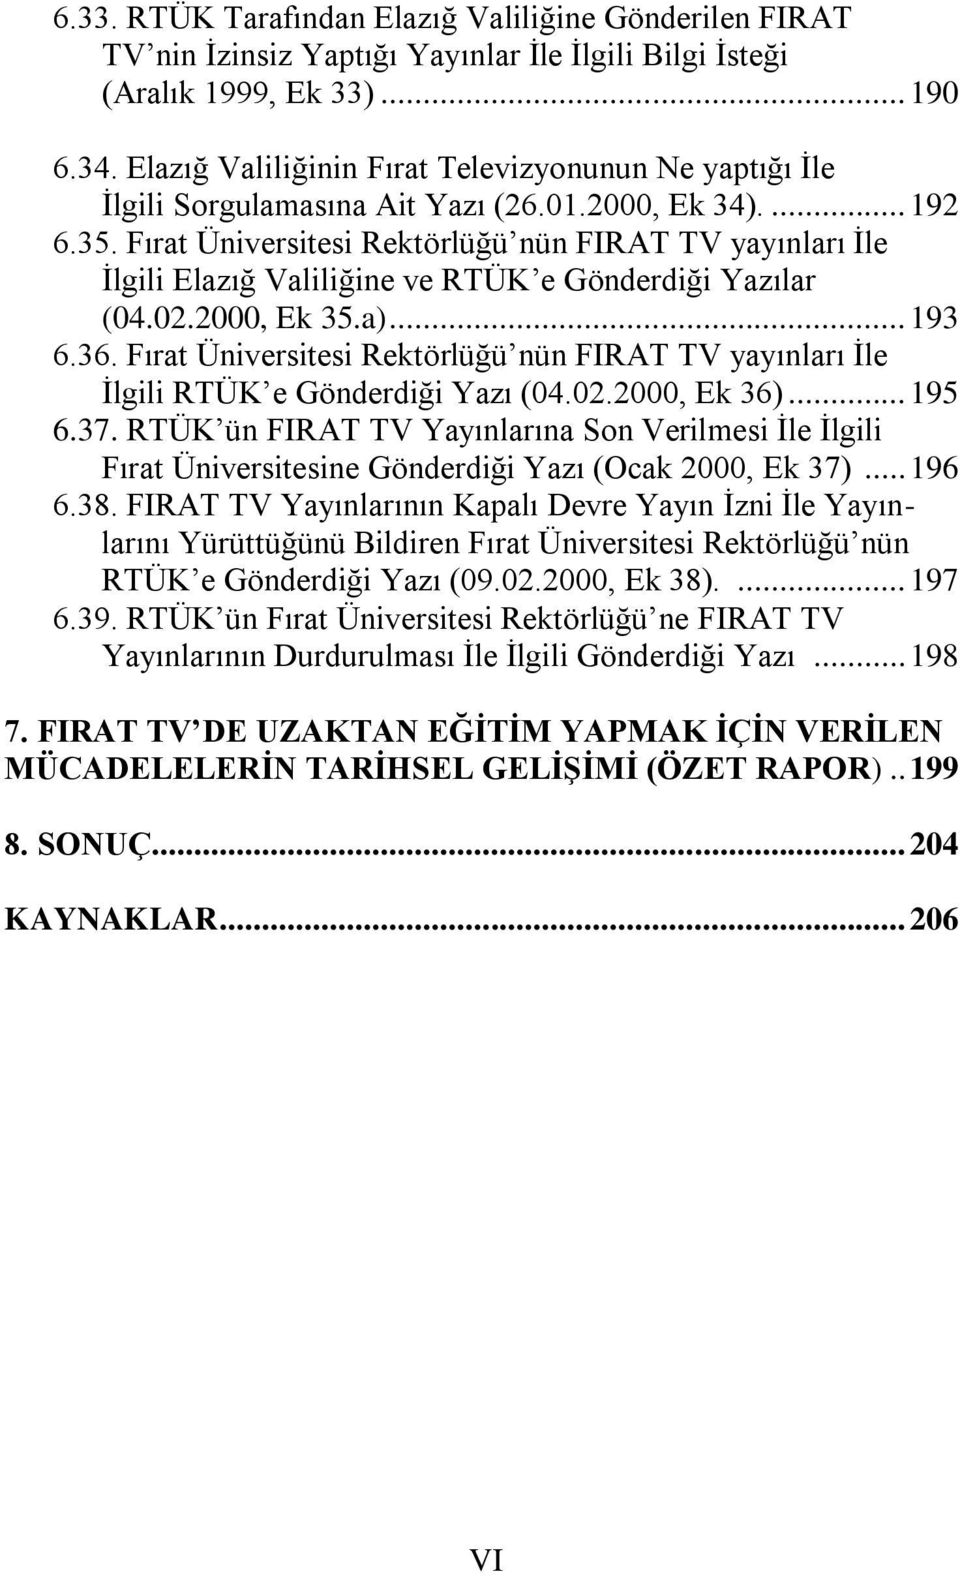 Fırat Üniversitesi Rektörlüğü nün FIRAT TV yayınları İle İlgili Elazığ Valiliğine ve RTÜK e Gönderdiği Yazılar (04.02.2000, Ek 35.a)... 193 6.36.